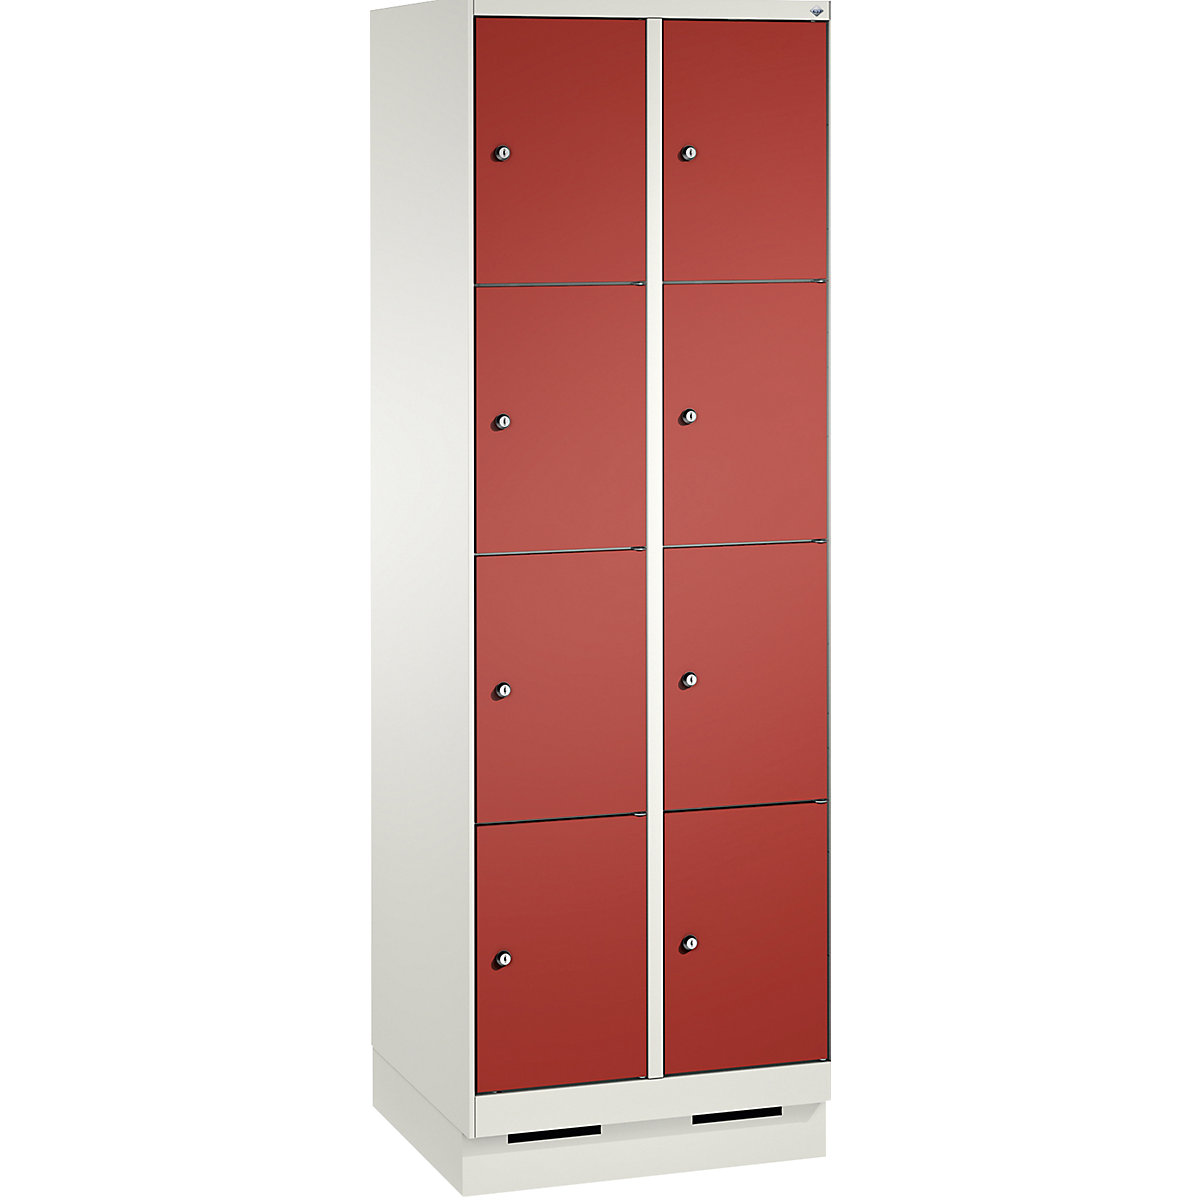 Armoire à casiers sur socle EVOLO – C+P, 2 compartiments, 4 casiers chacun, largeur compartiments 300 mm, blanc trafic / rouge feu-12